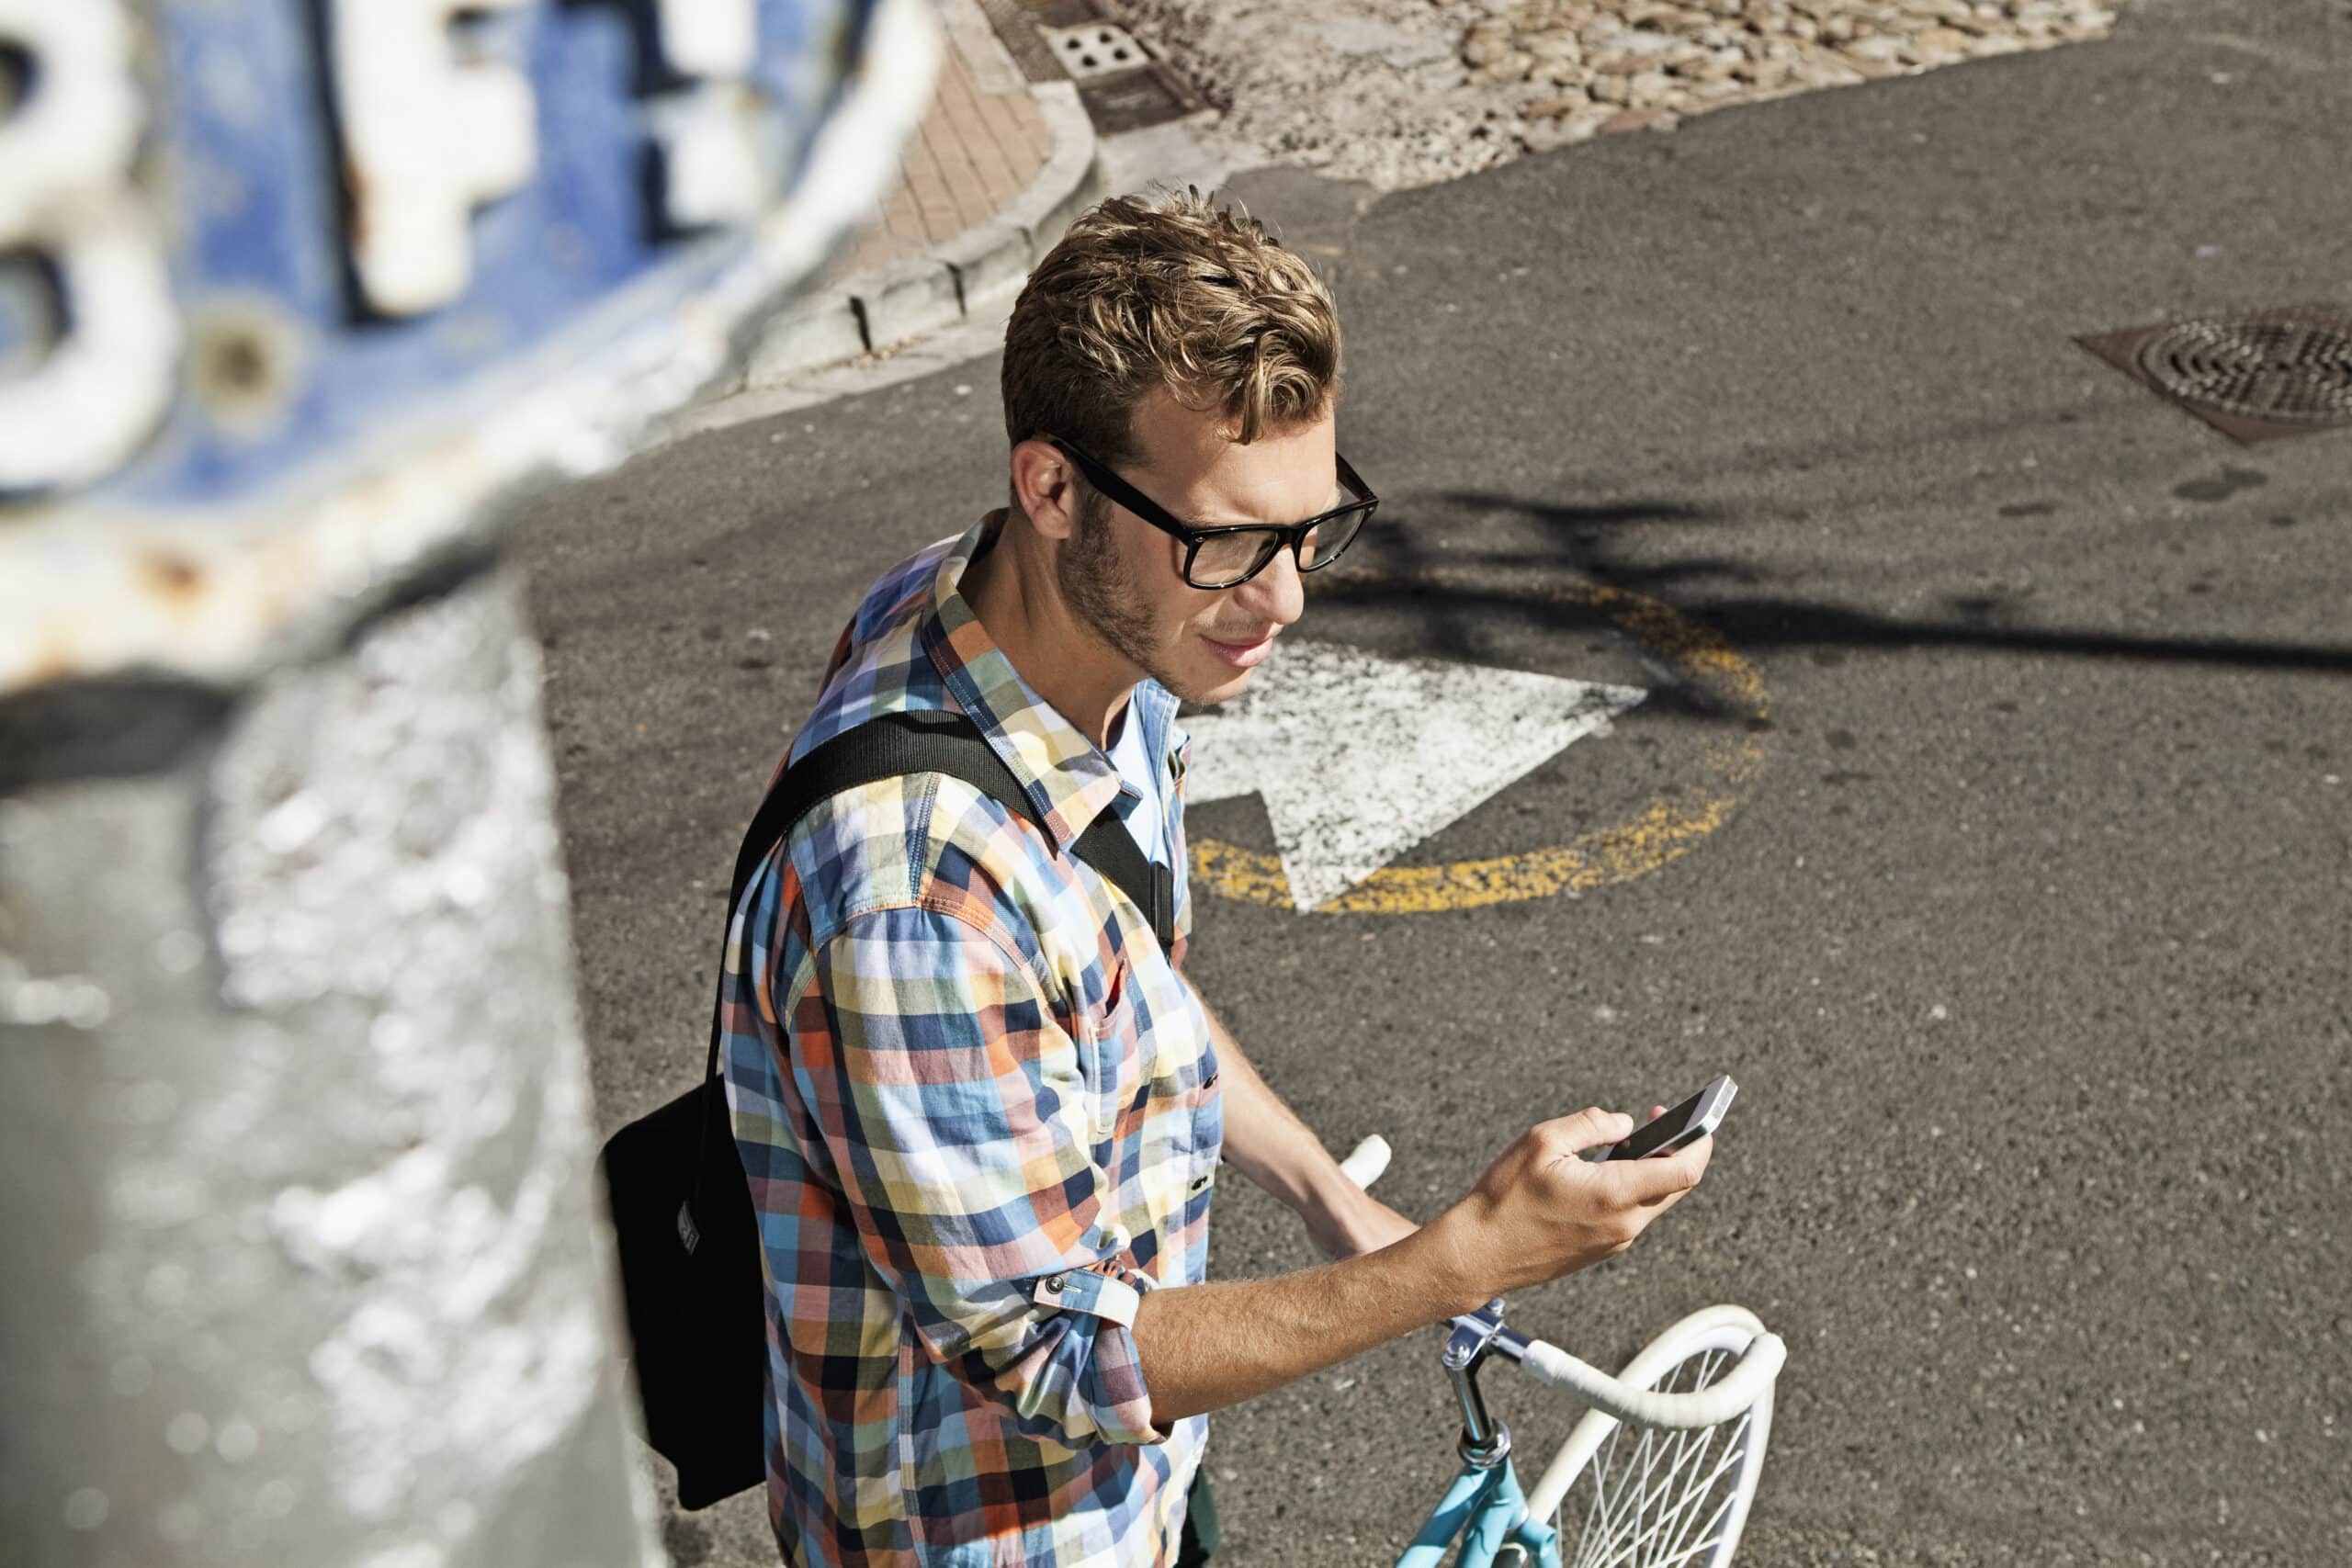 Ein junger Mann mit blonden Haaren, Brille und kariertem Hemd steht auf einer sonnenbeschienenen Straße, schaut auf sein Smartphone, neben ihm steht ein Fahrrad. © Fotografie Tomas Rodriguez